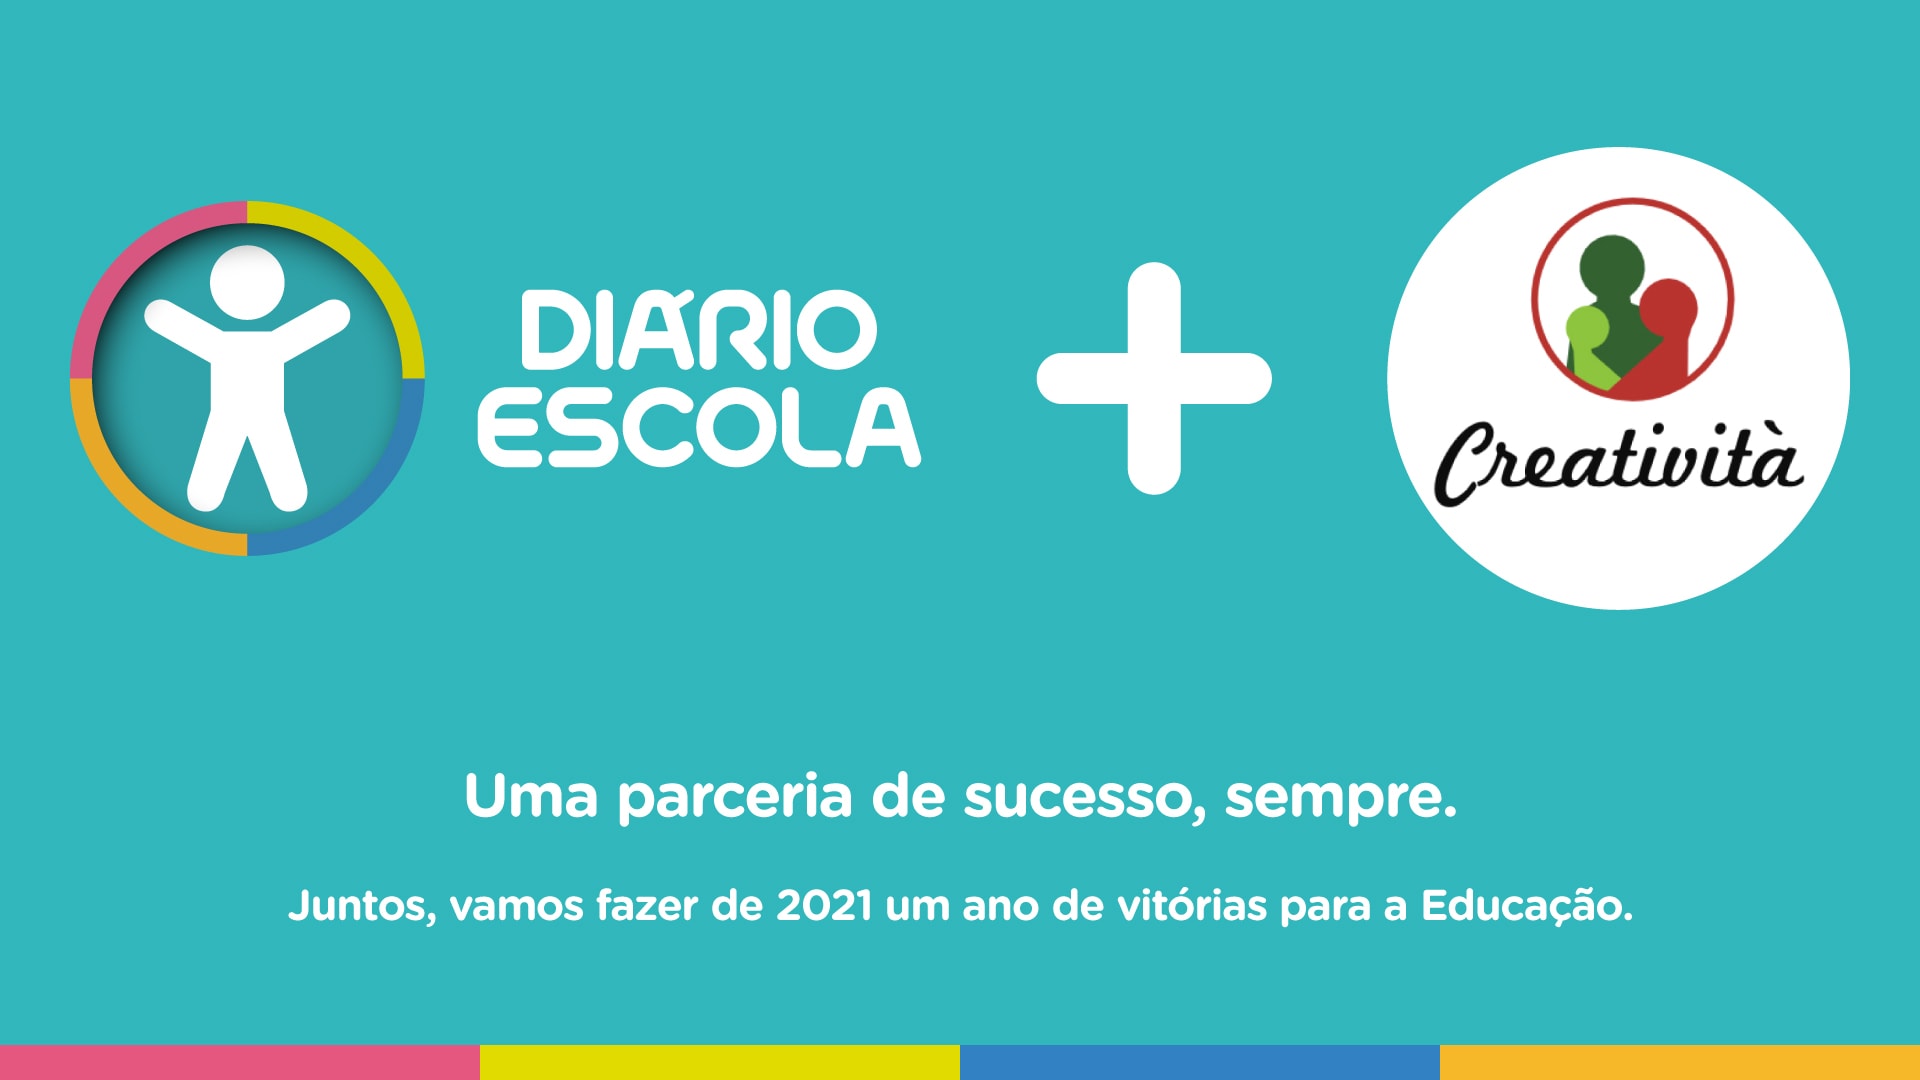 Escola Creatività e a parceria de sucesso com o Diário Escola